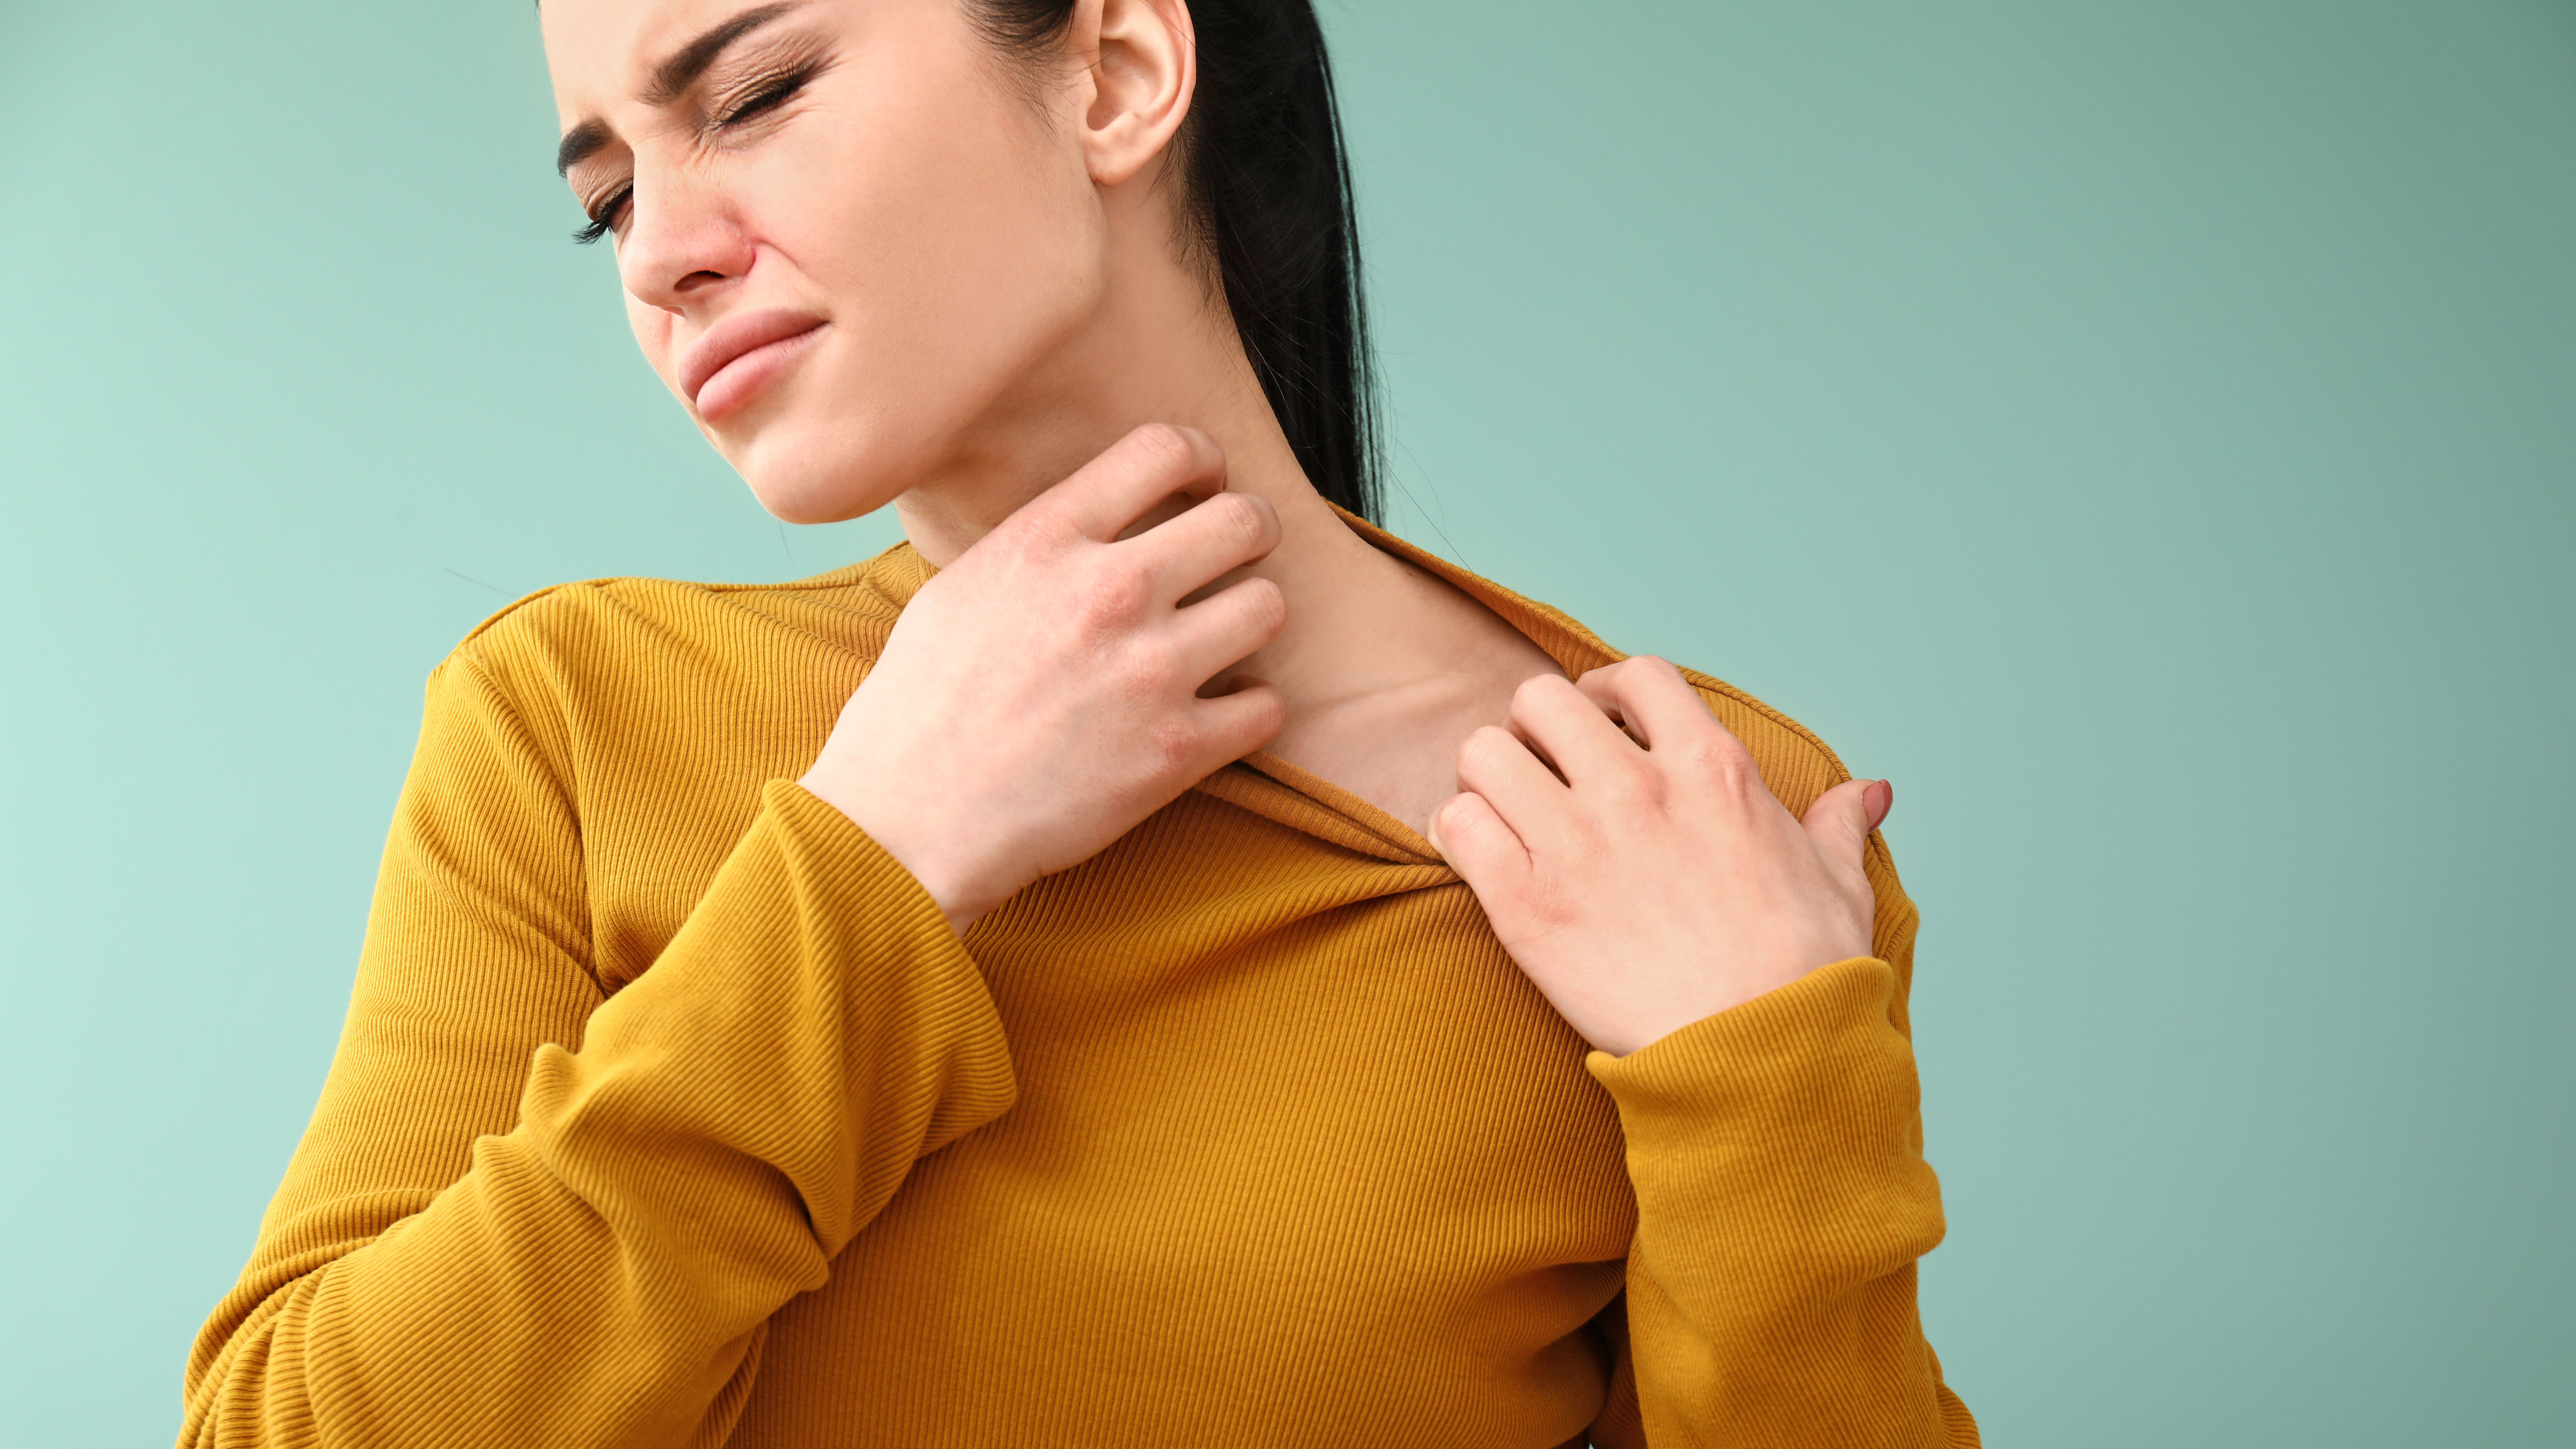 Eine Frau kratzt sich am Hals, während sie einen gelben Pullover trägt